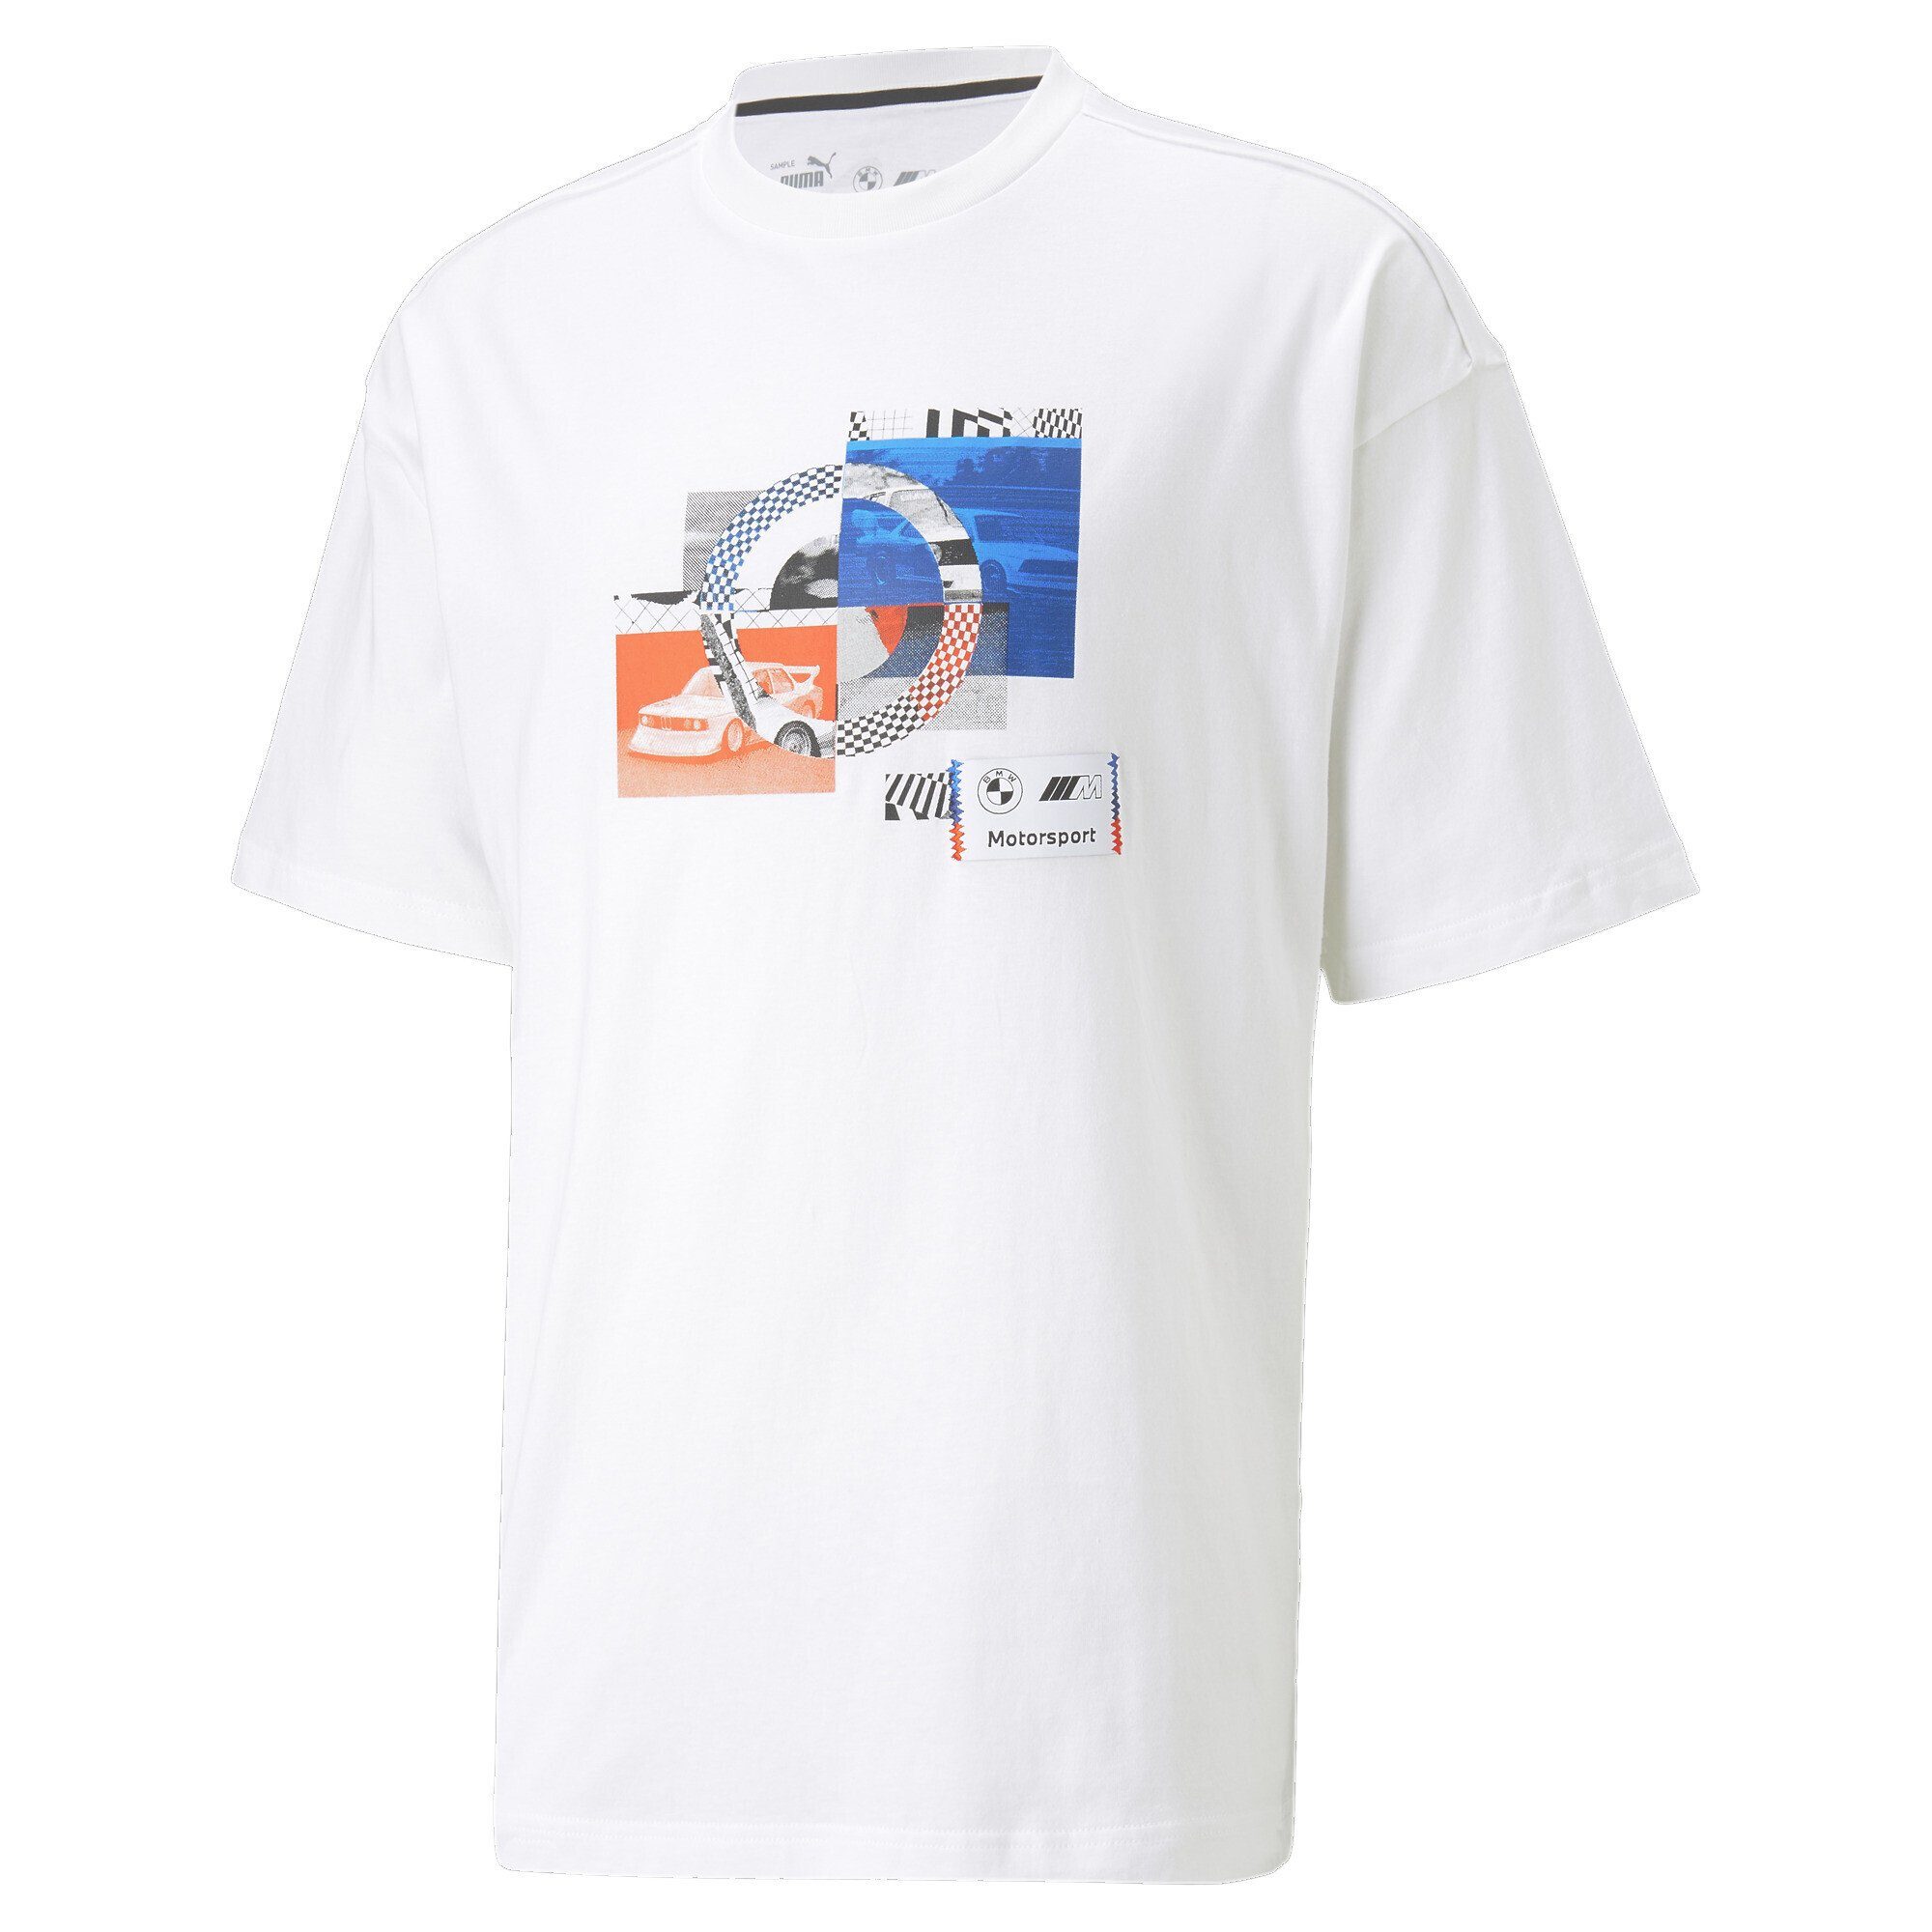 Statement T-Shirt M mit Motorsport Trainingsshirt BMW Herren PUMA Autografik